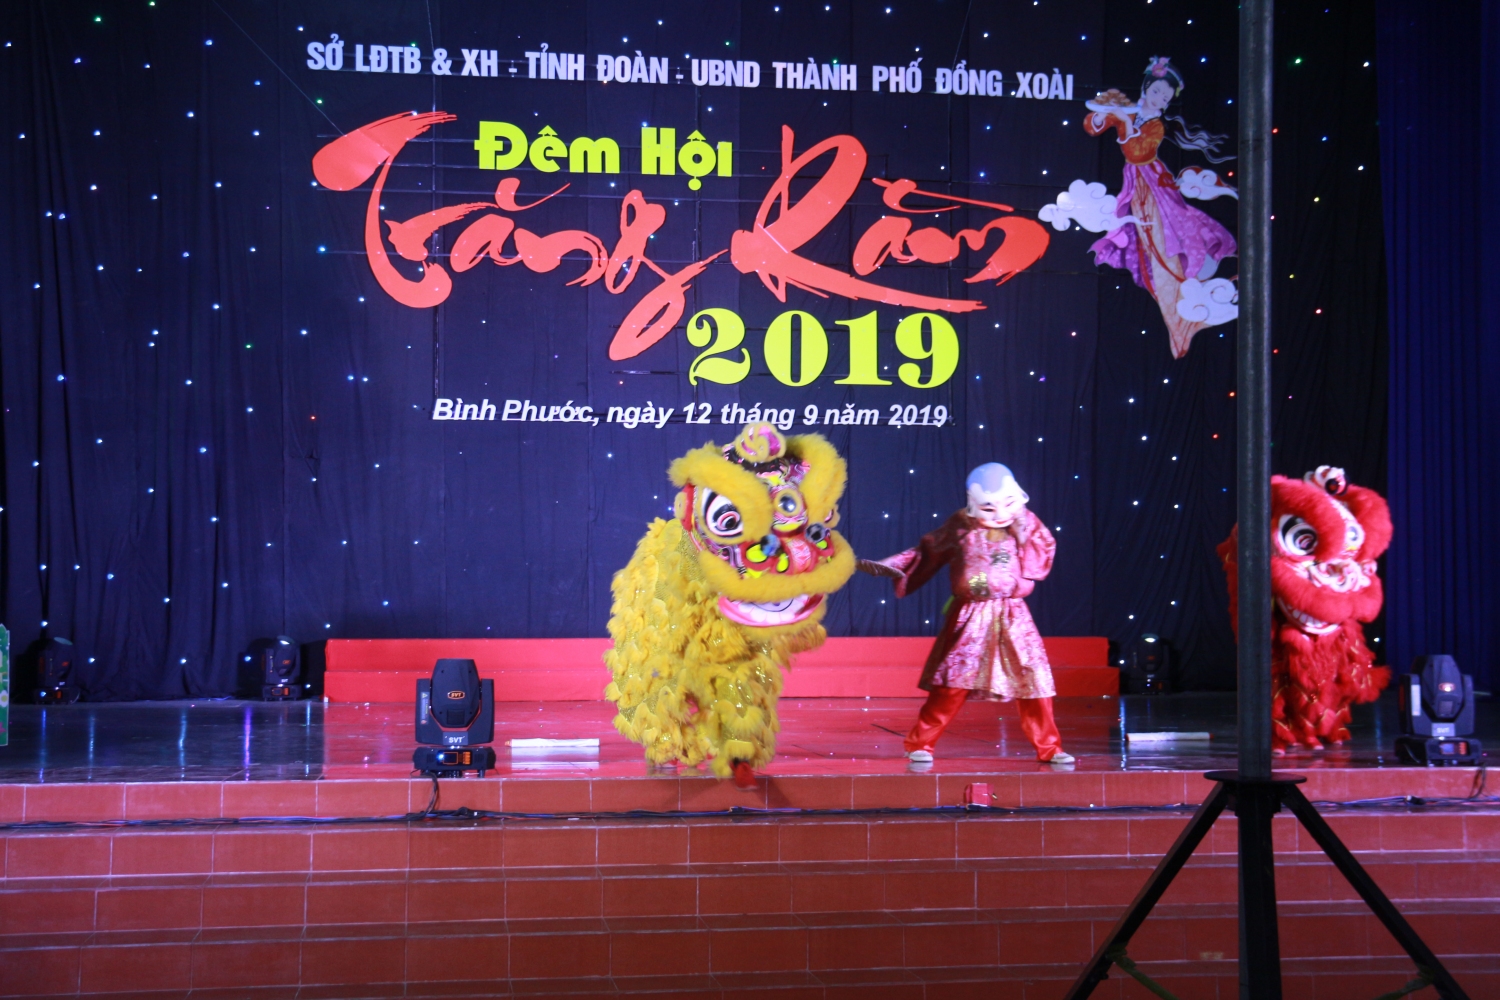 Thiếu niên, nhi đồng Thành phố Đồng Xoài vui Tết Trung thu năm 2019.